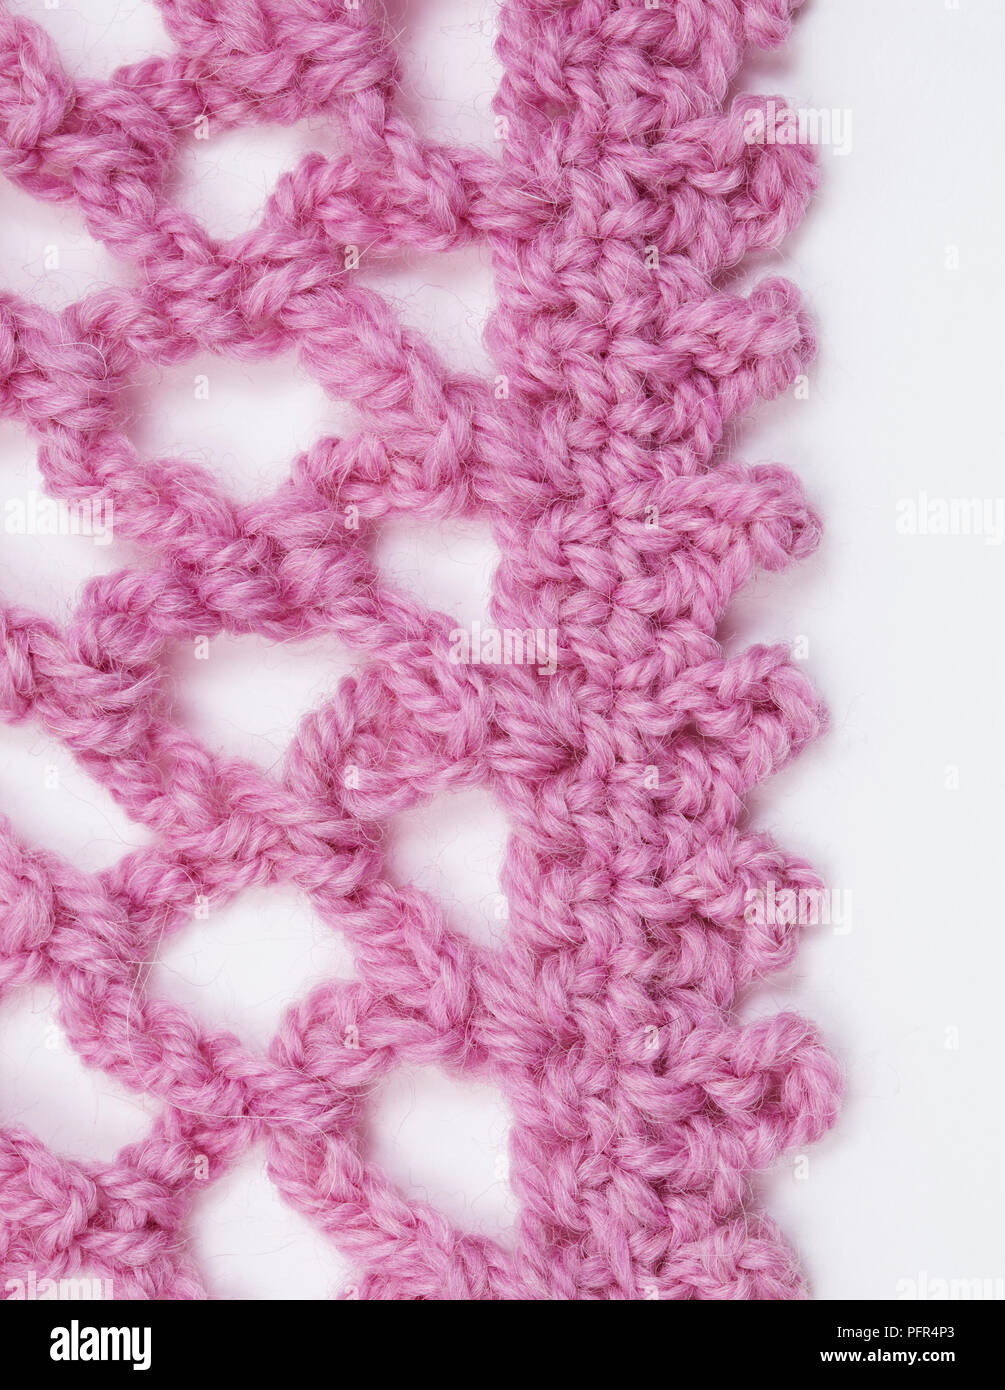 Bordures picot au crochet sur le châle rose Photo Stock - Alamy